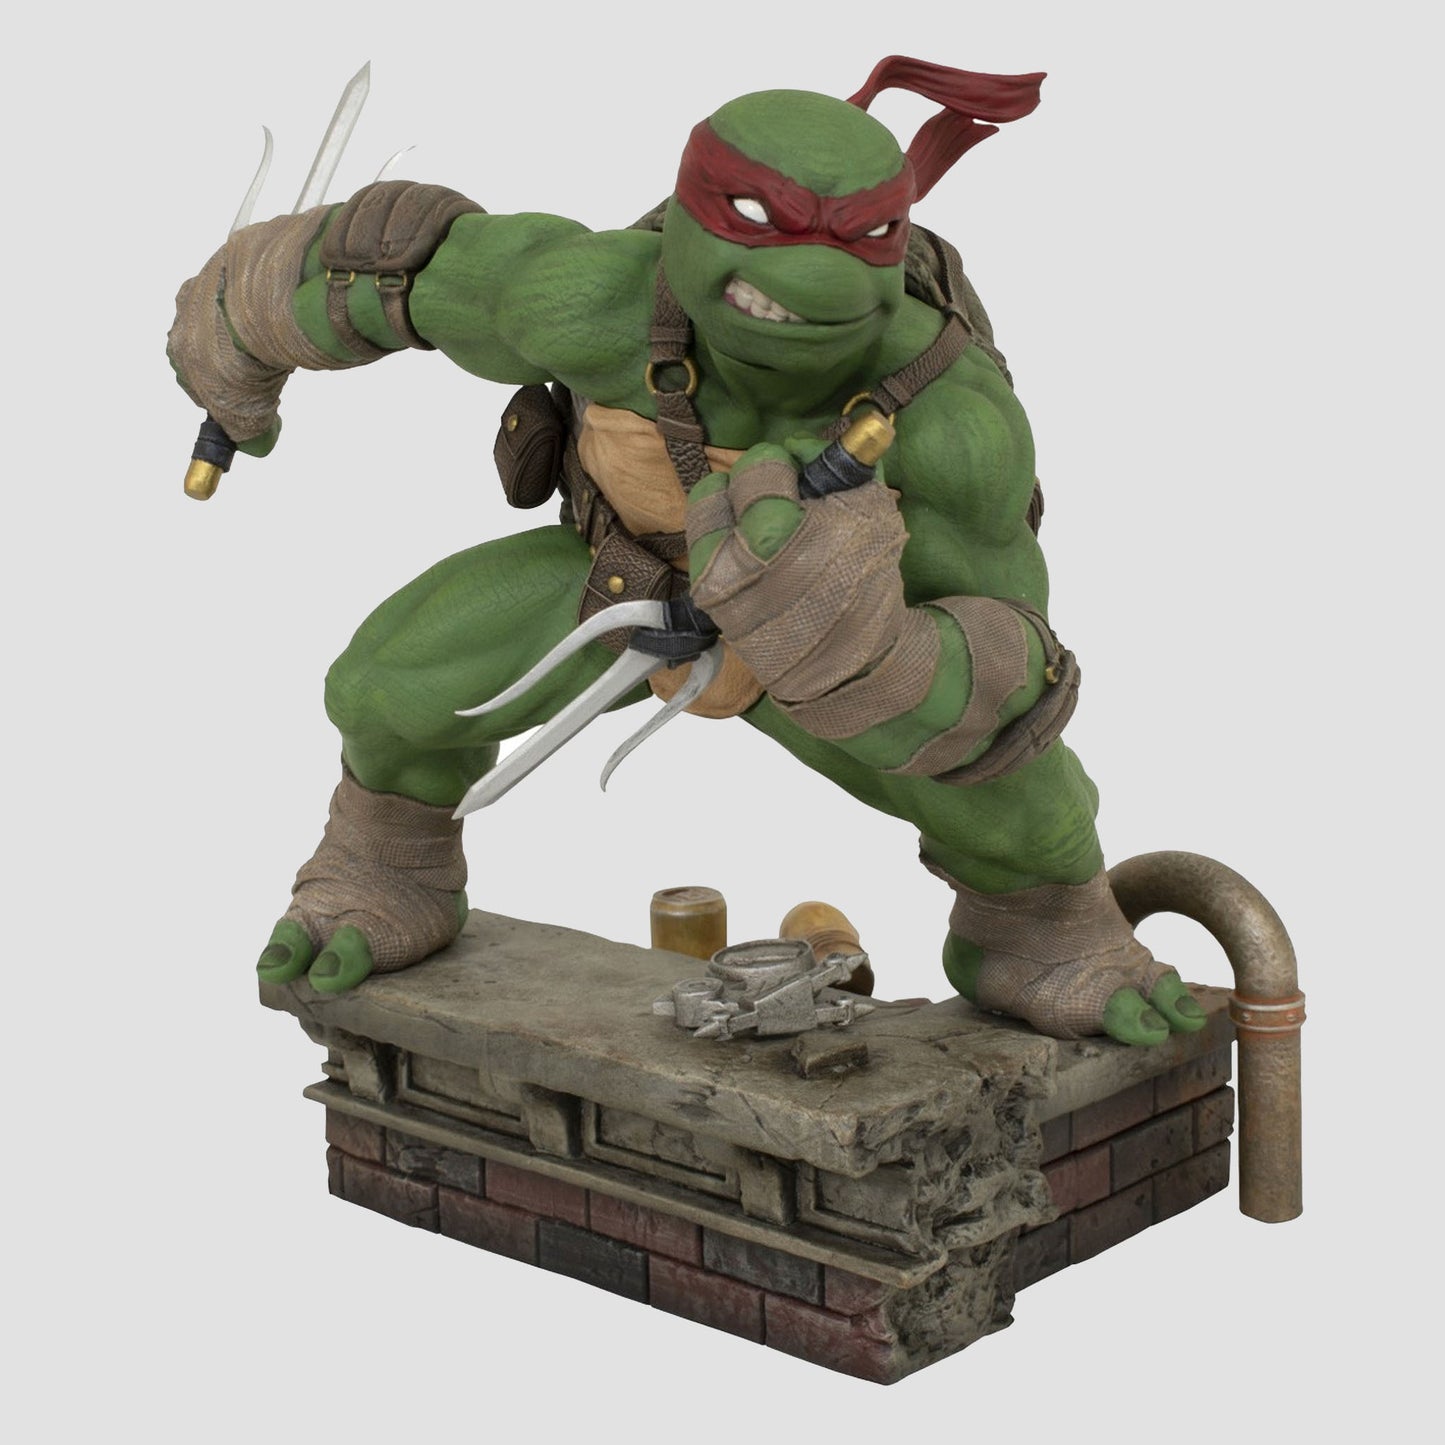 Raphael (Teenage Mutant Ninja Turtles) Gallery Statue